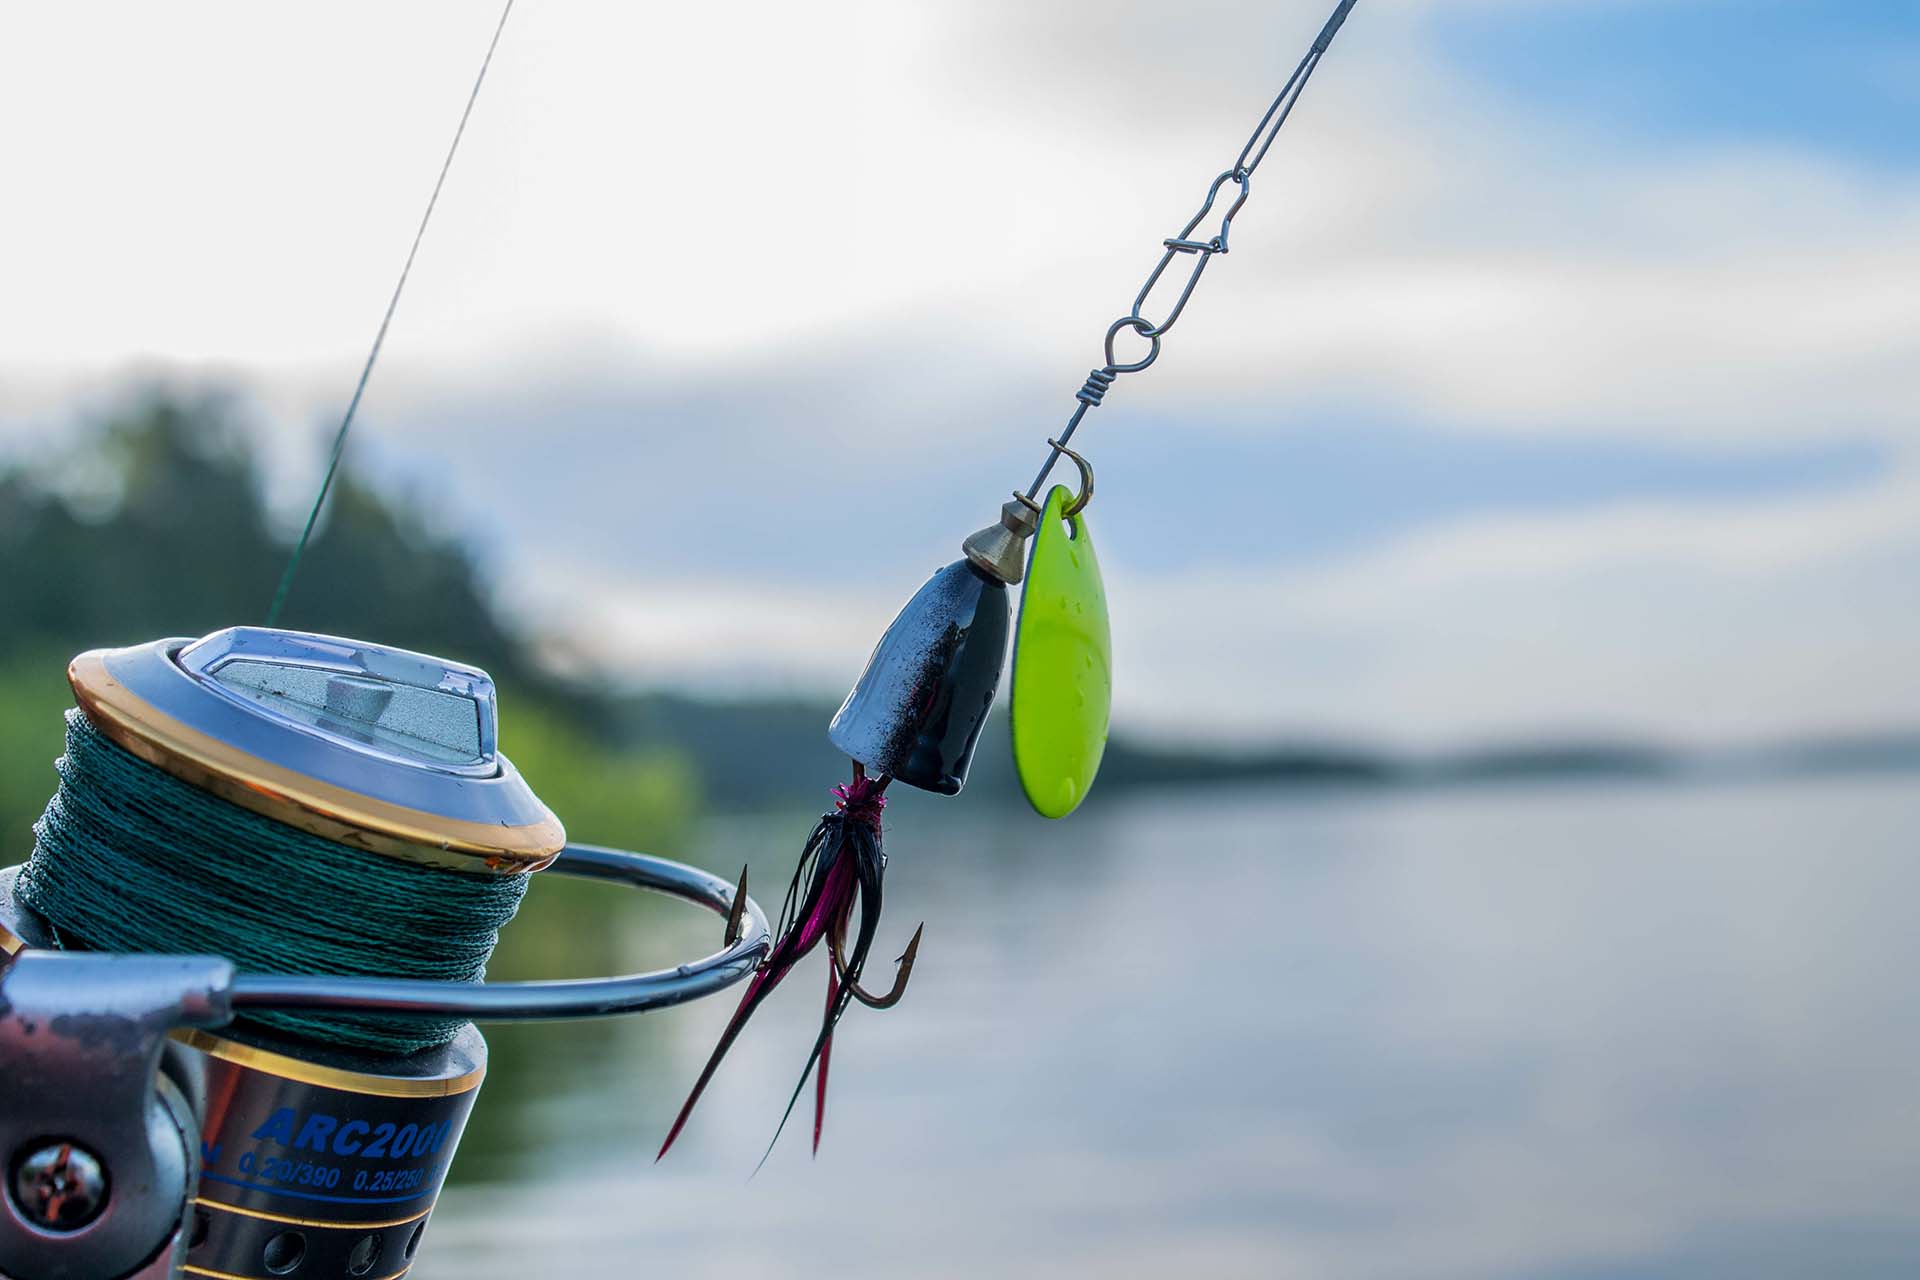 fishing spinning lure on fishing reel at the lake